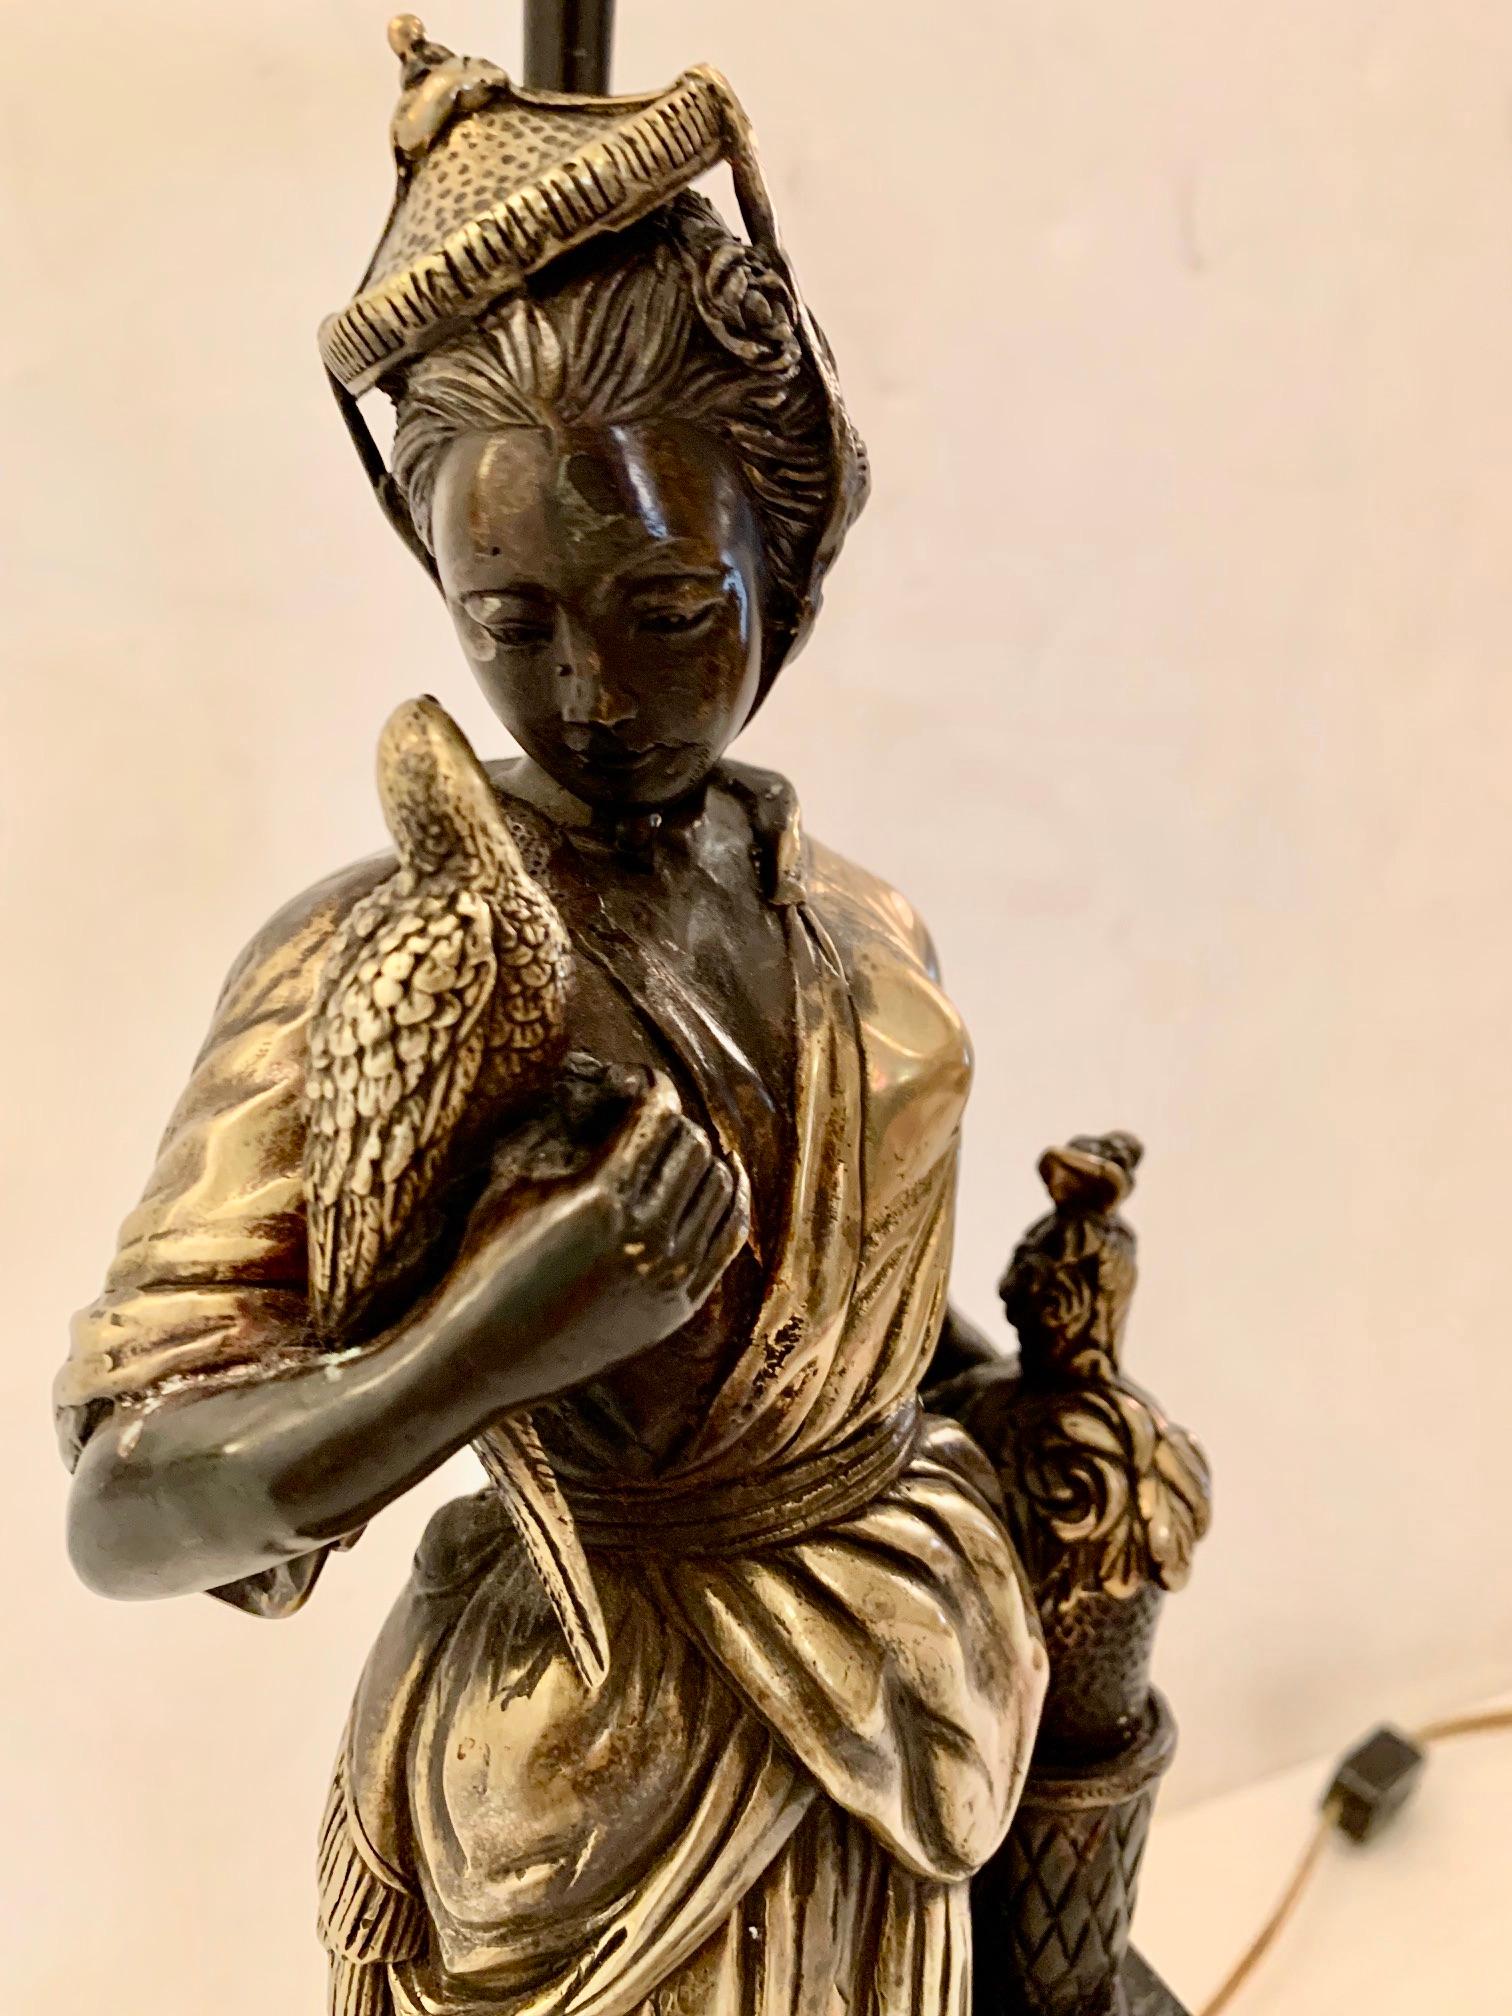 Une belle et inhabituelle lampe de table sculpturale ayant une base figurative asiatique d'une femme aristocratique élégante avec un chapeau à pointe et un oiseau dans une main. La patine est d'un riche argent et bronze tandis que la base est noire.